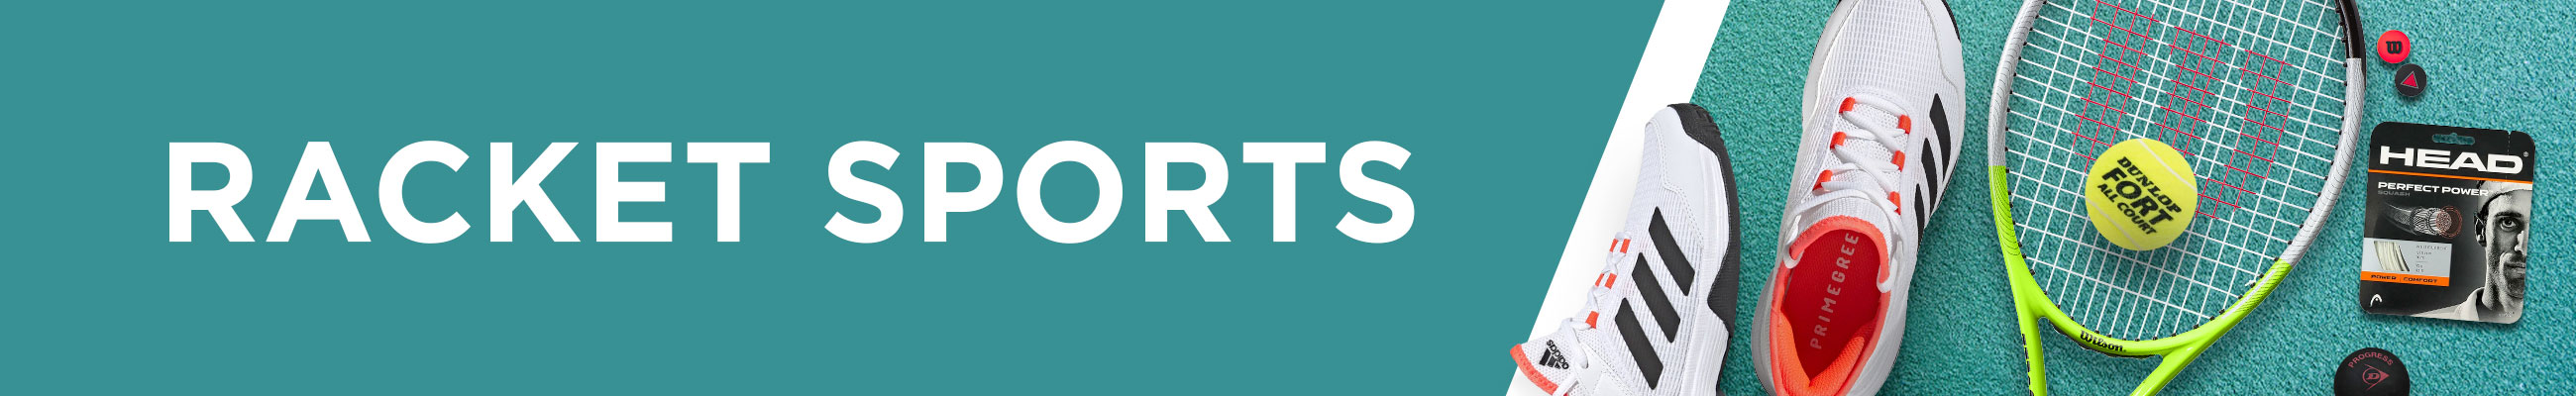 Buy Racket Sports, Accessories & Equipment Online in Kuwait - Intersport